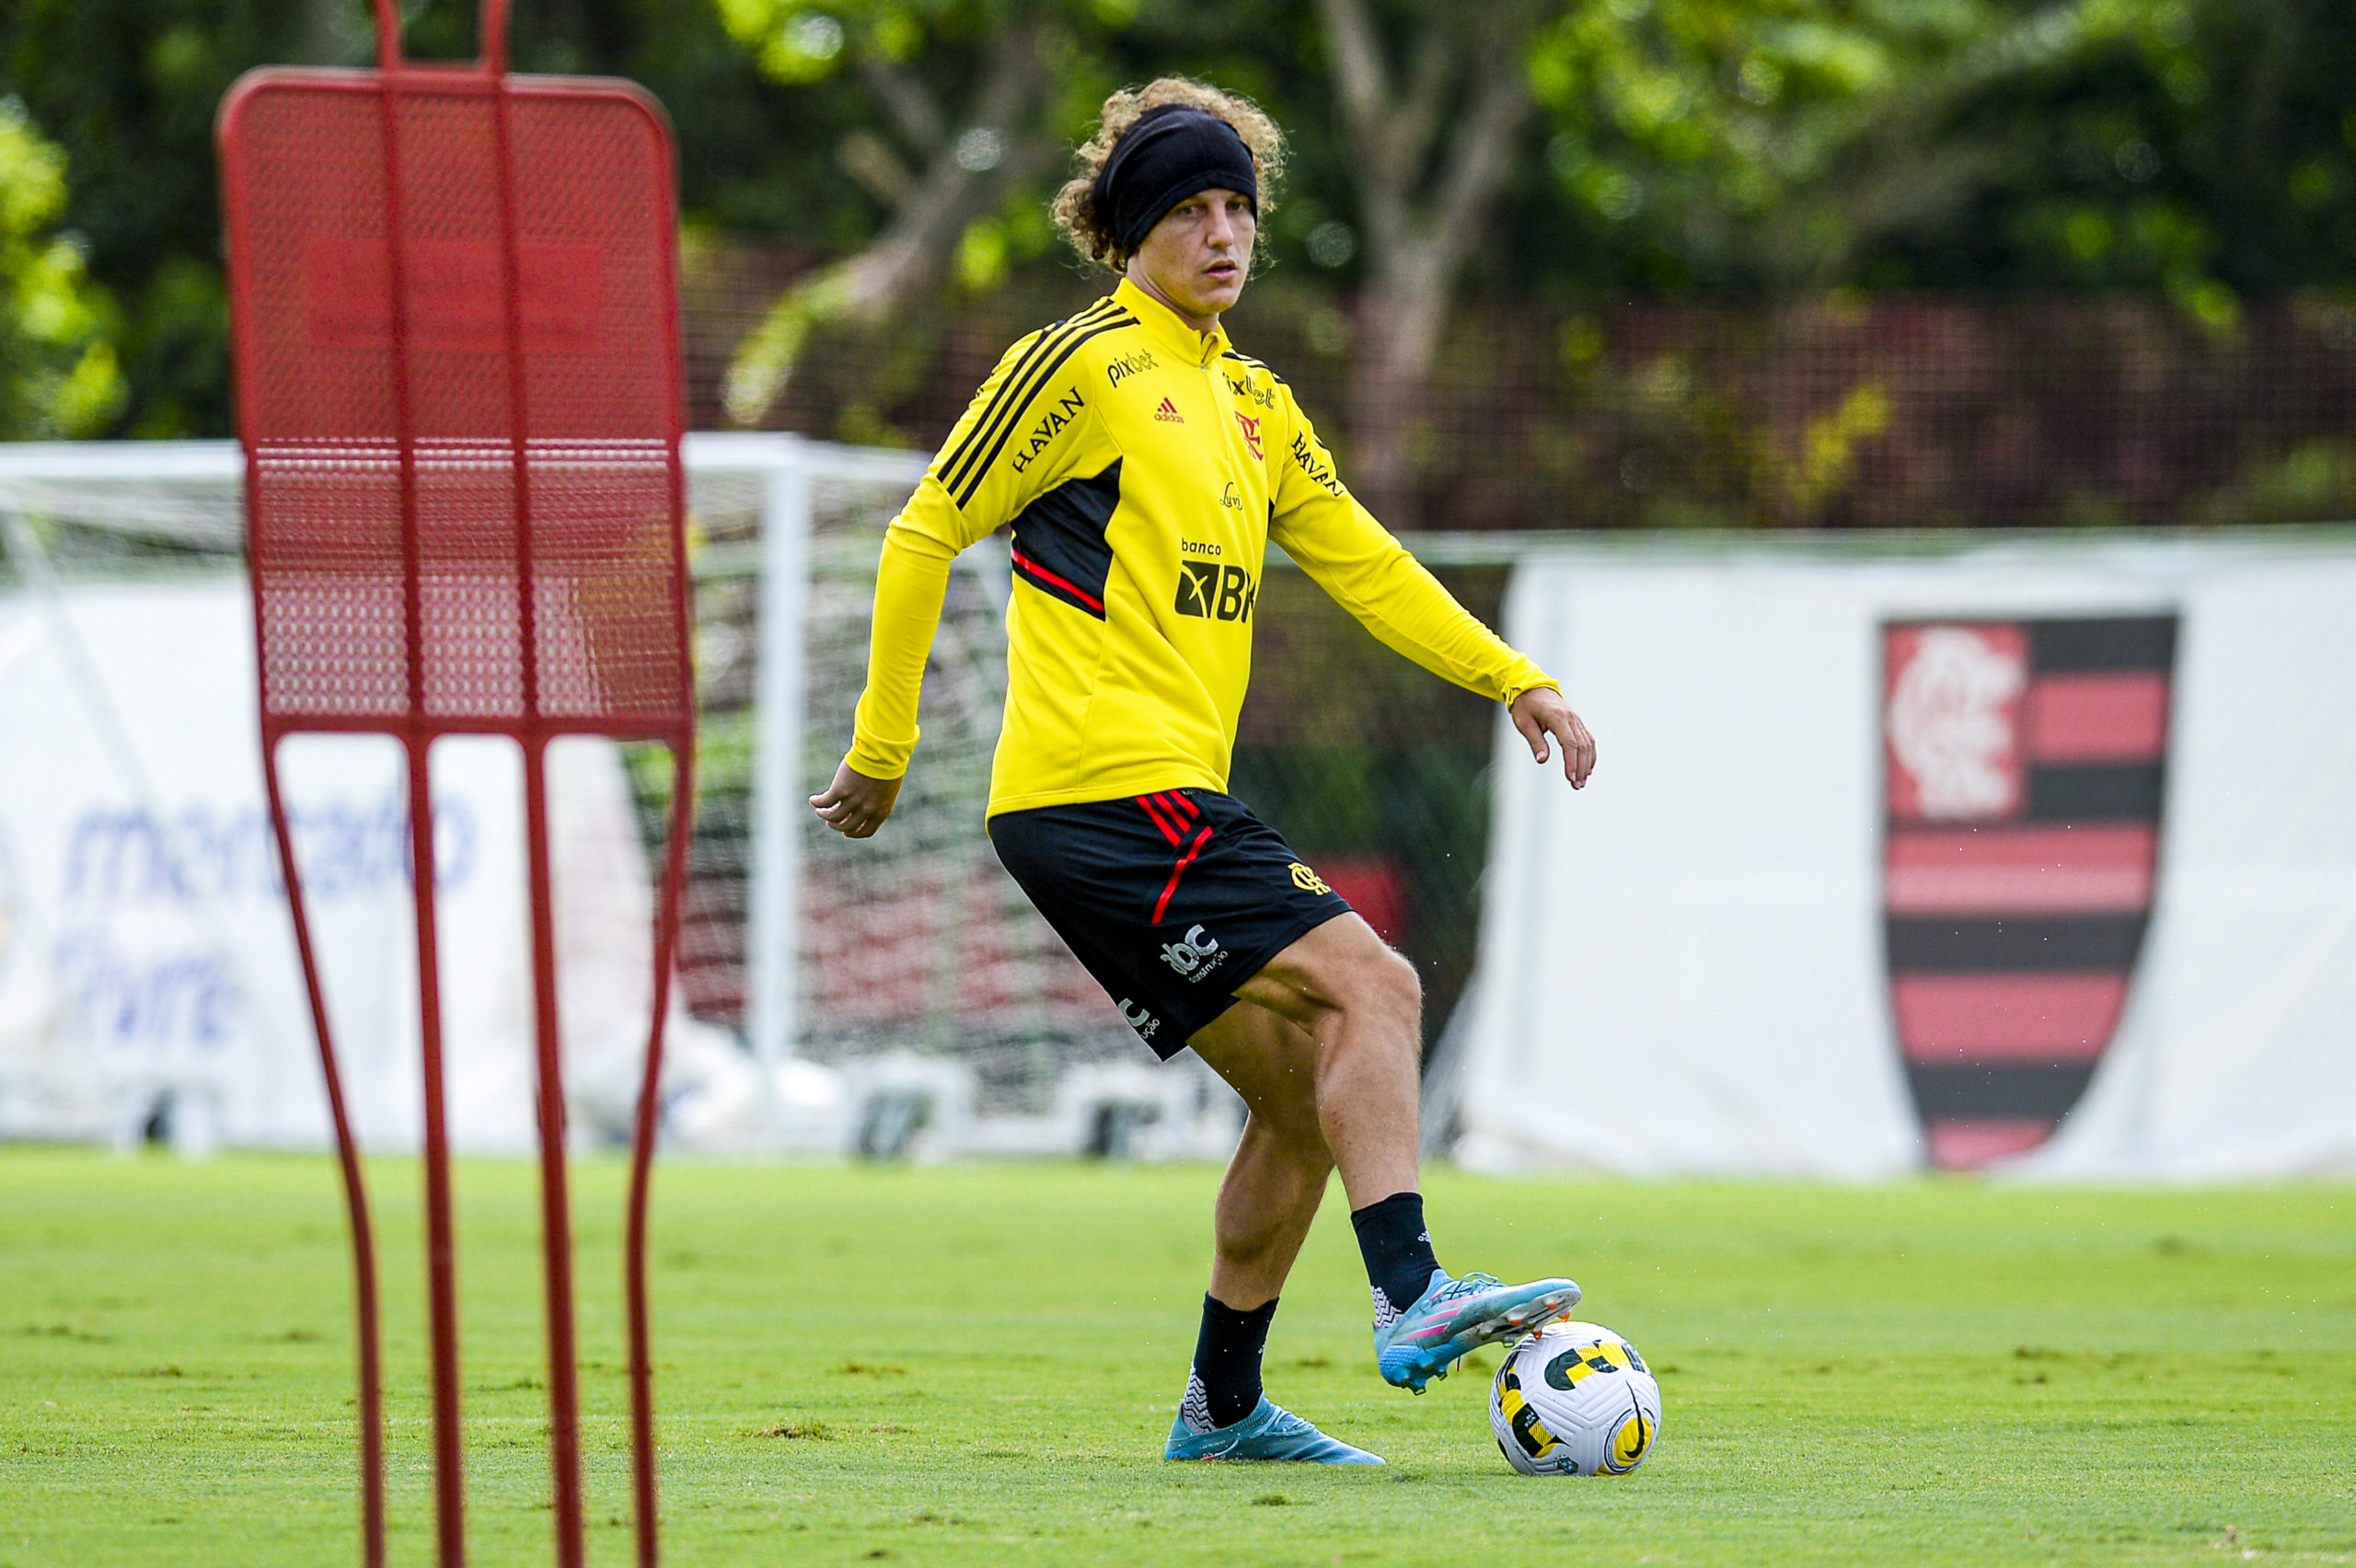 David Luiz participa de treino e volta a ficar à disposição contra o Goiás